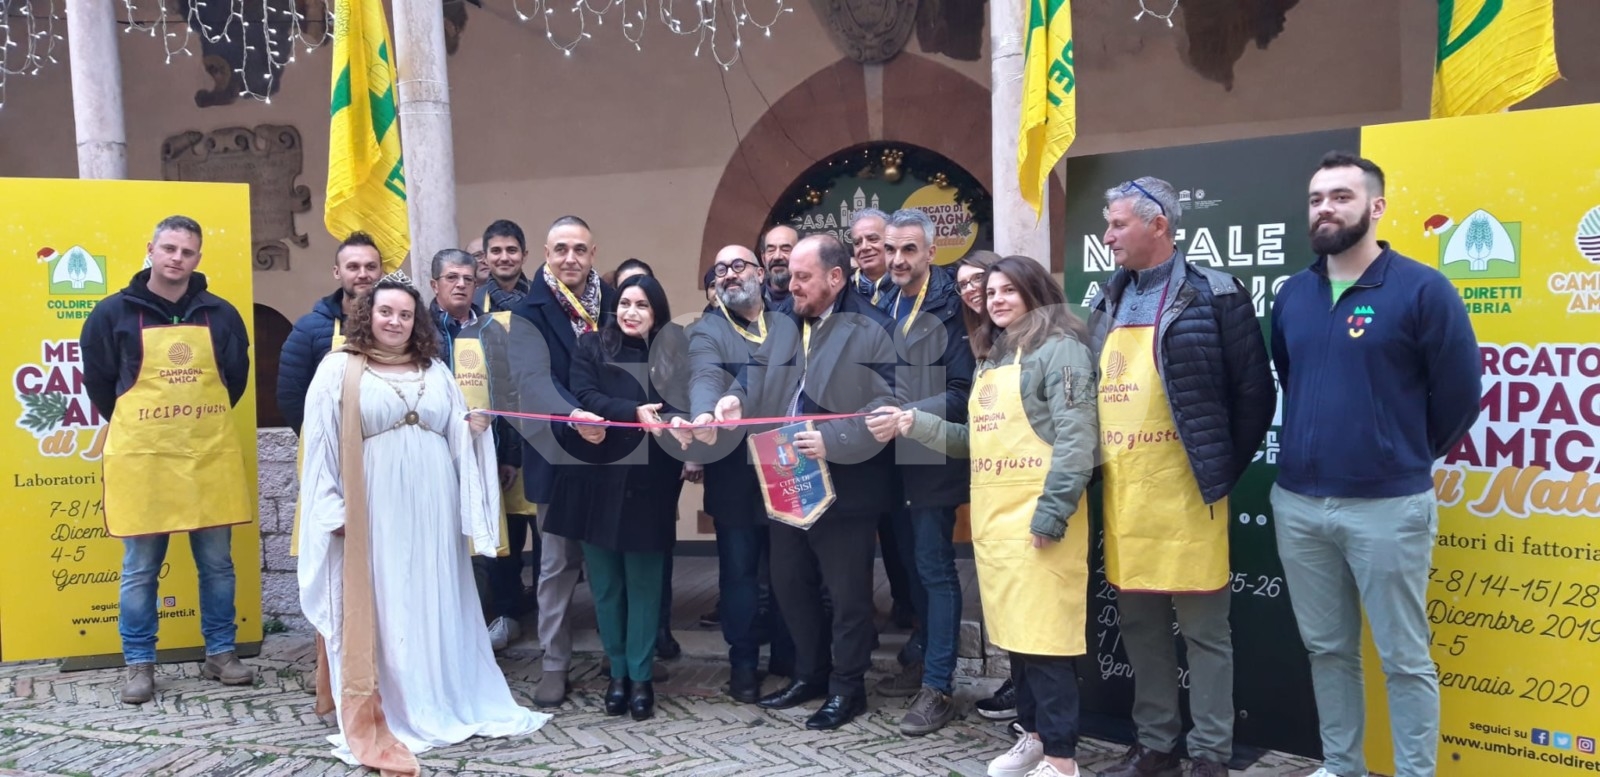 Natale Assisi 2019 al via: eventi, mercatini e tanto divertimento (foto)